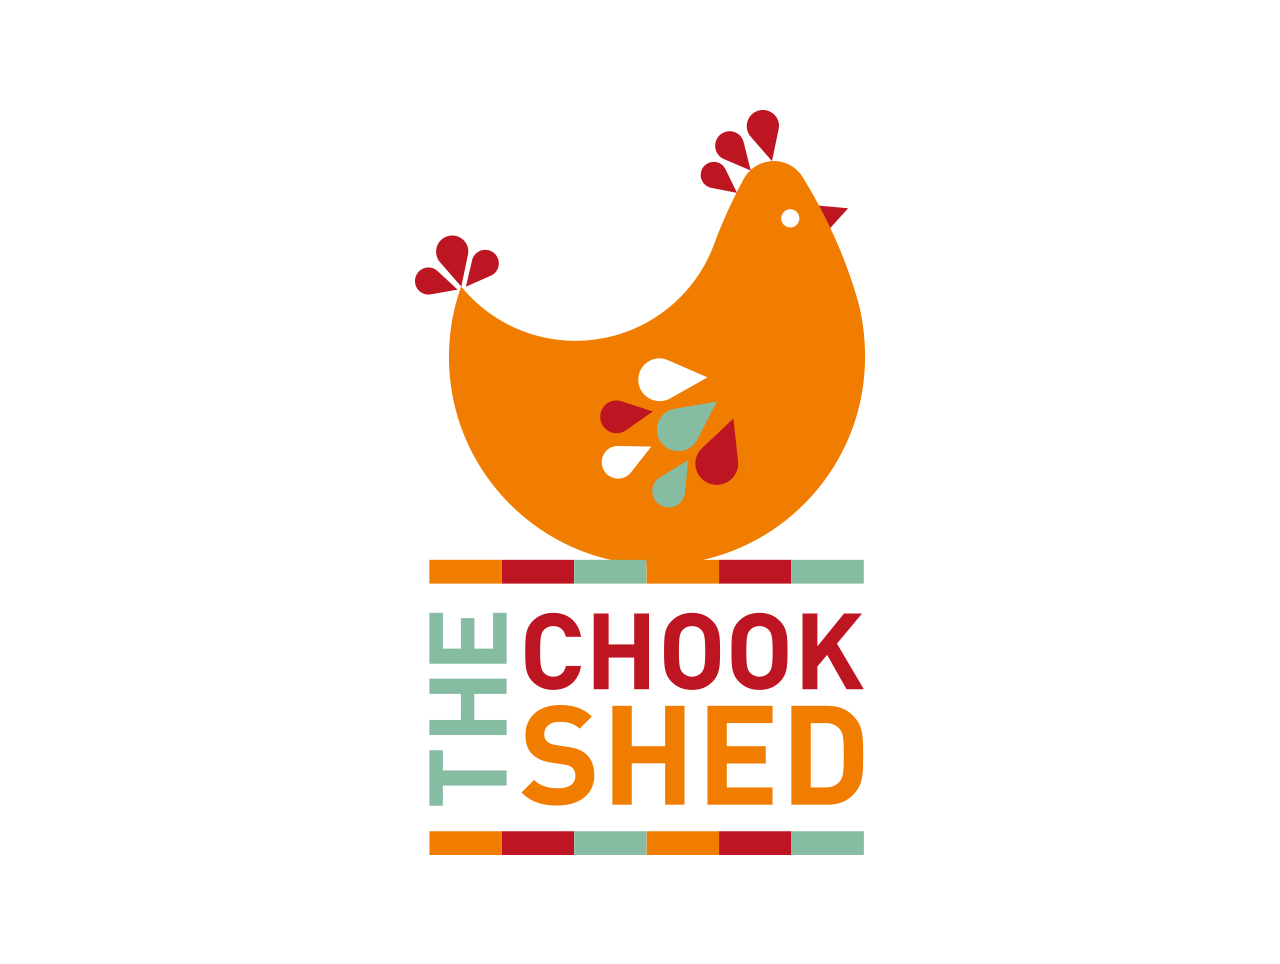 chook shed logo design and illustration